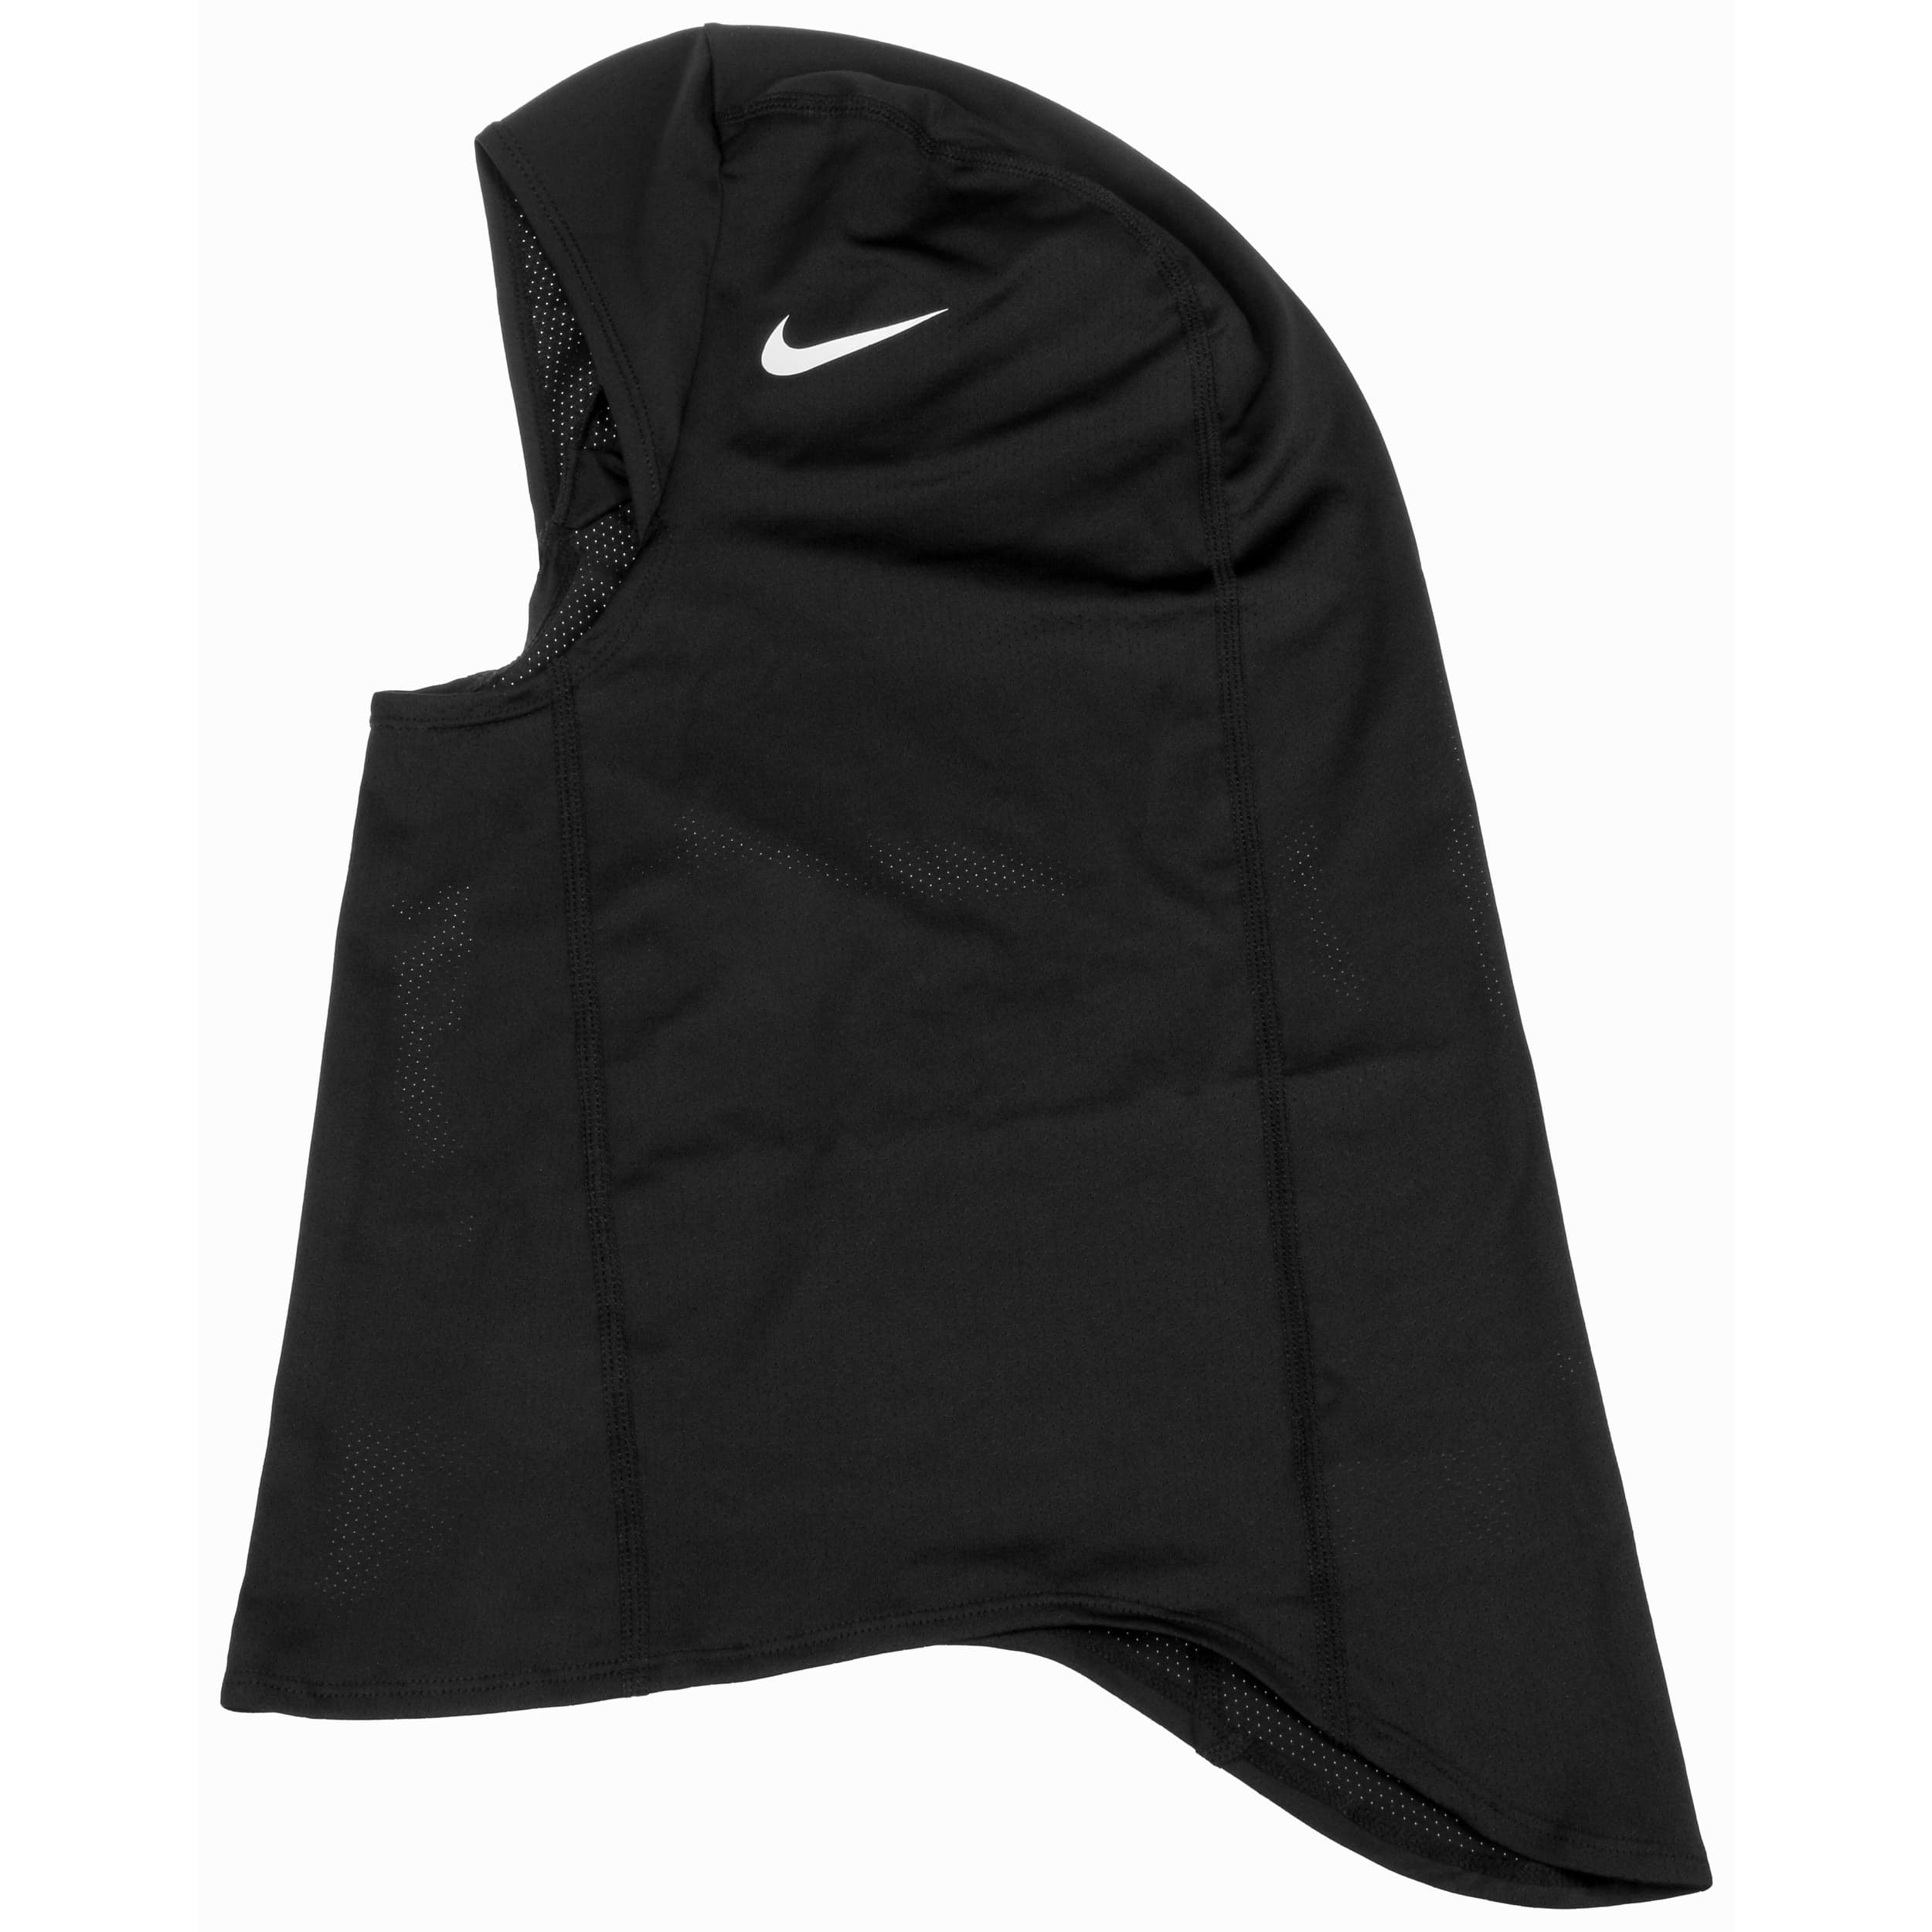 Immigratie opener rok Pro Hijab 2.0 Hoofddoek by Nike - 39,00 €